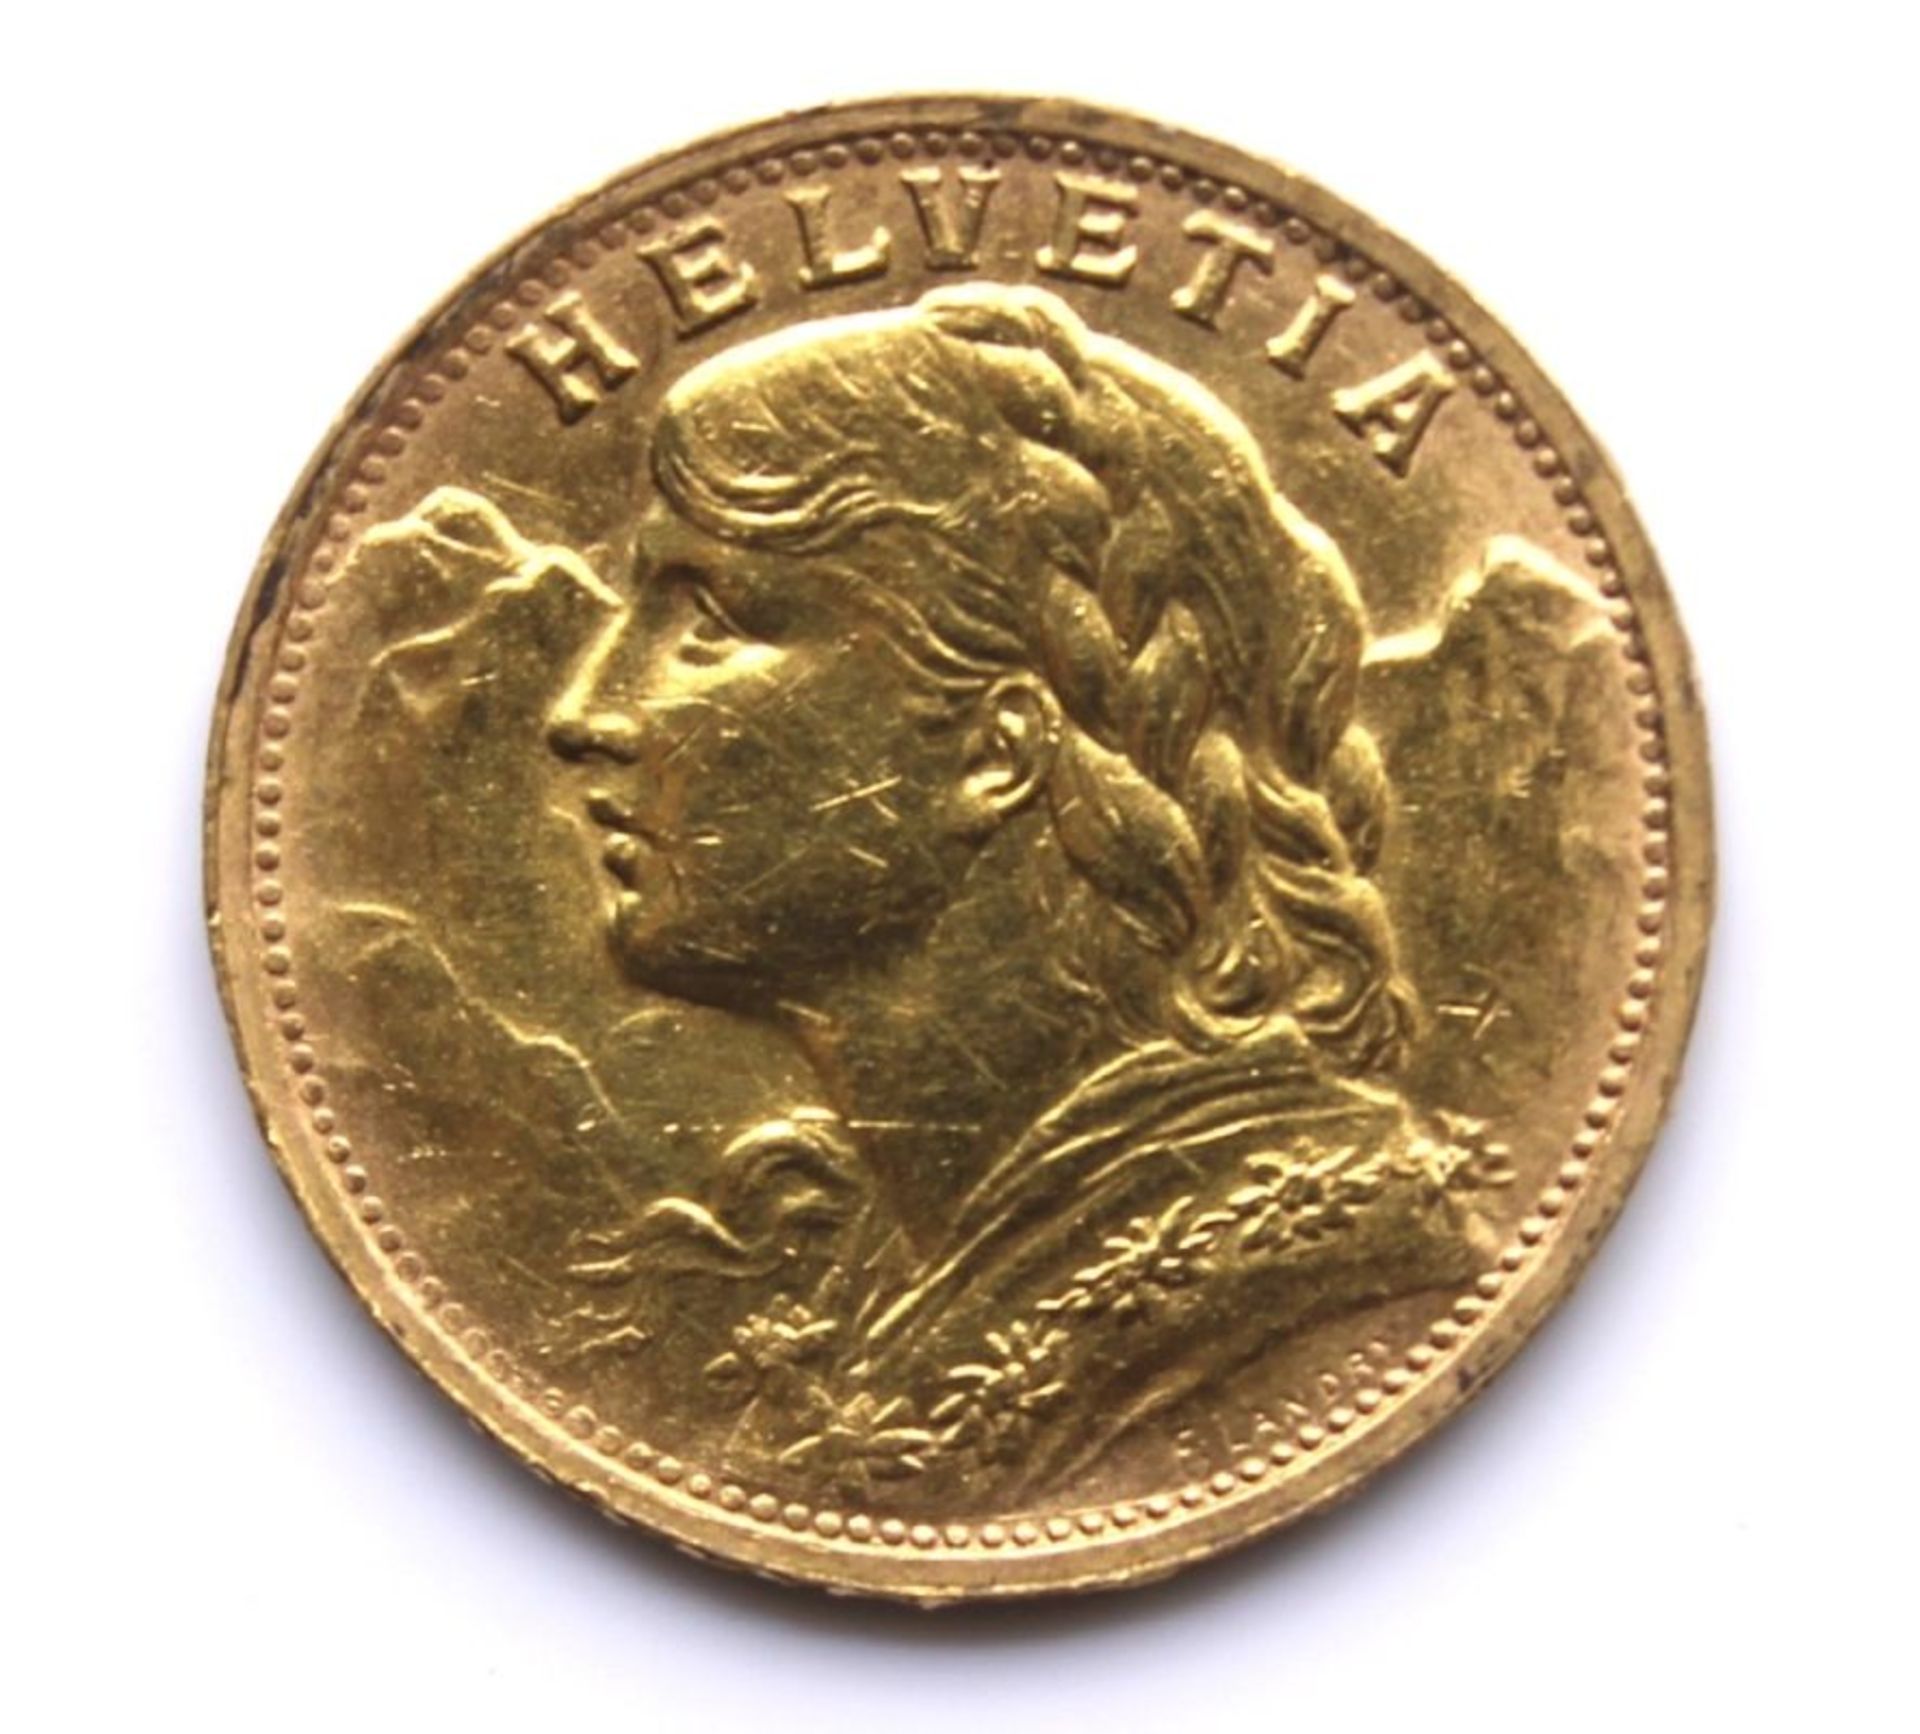 Goldmünze - Schweiz - 20 Franken sog. "Vreneli", 1947 B, Helvetia, d.= ca. 21 mm, ca. 6,45 Gramm